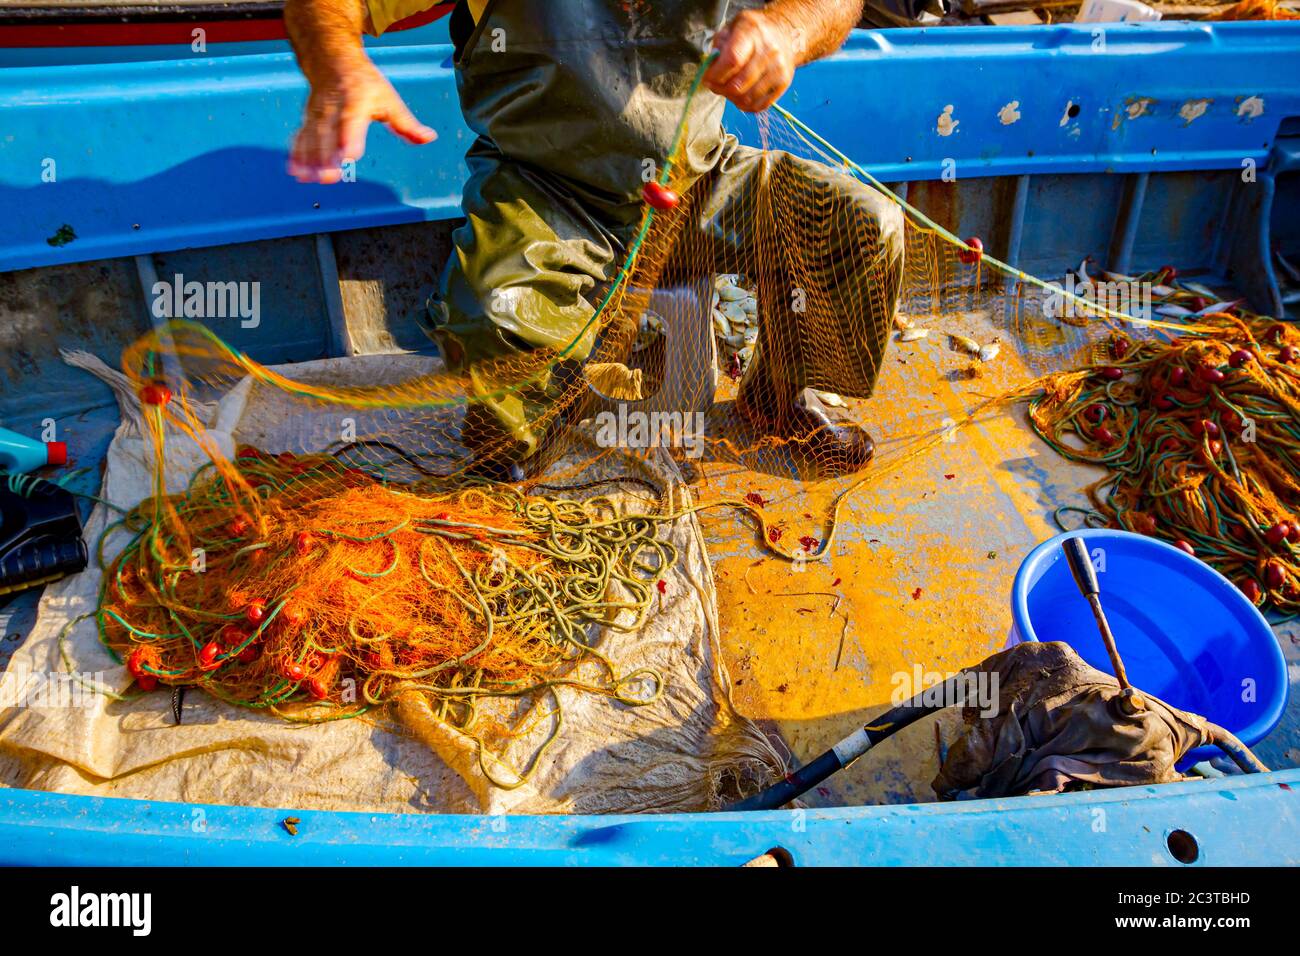 Fisher in Gummihosen und Boot sitzen in seinem Boot und stapeln Angelnetz  für Angeln auf offener See Stockfotografie - Alamy